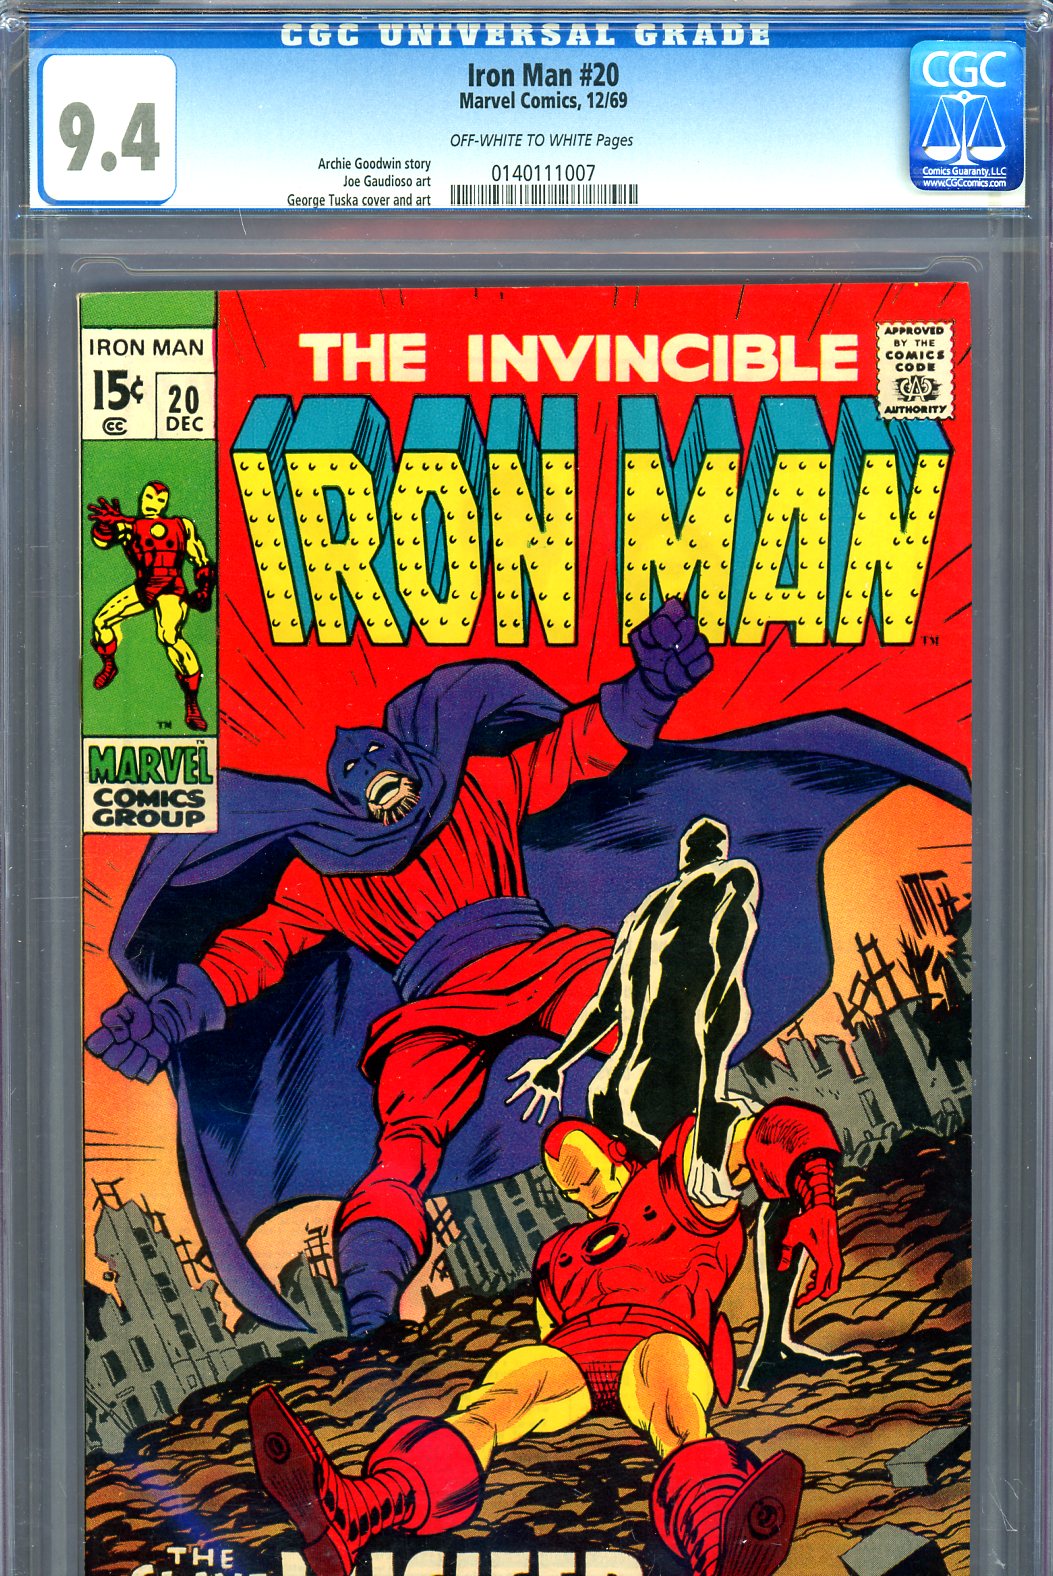 Iron Man #20 CGC 9.4 ow/w